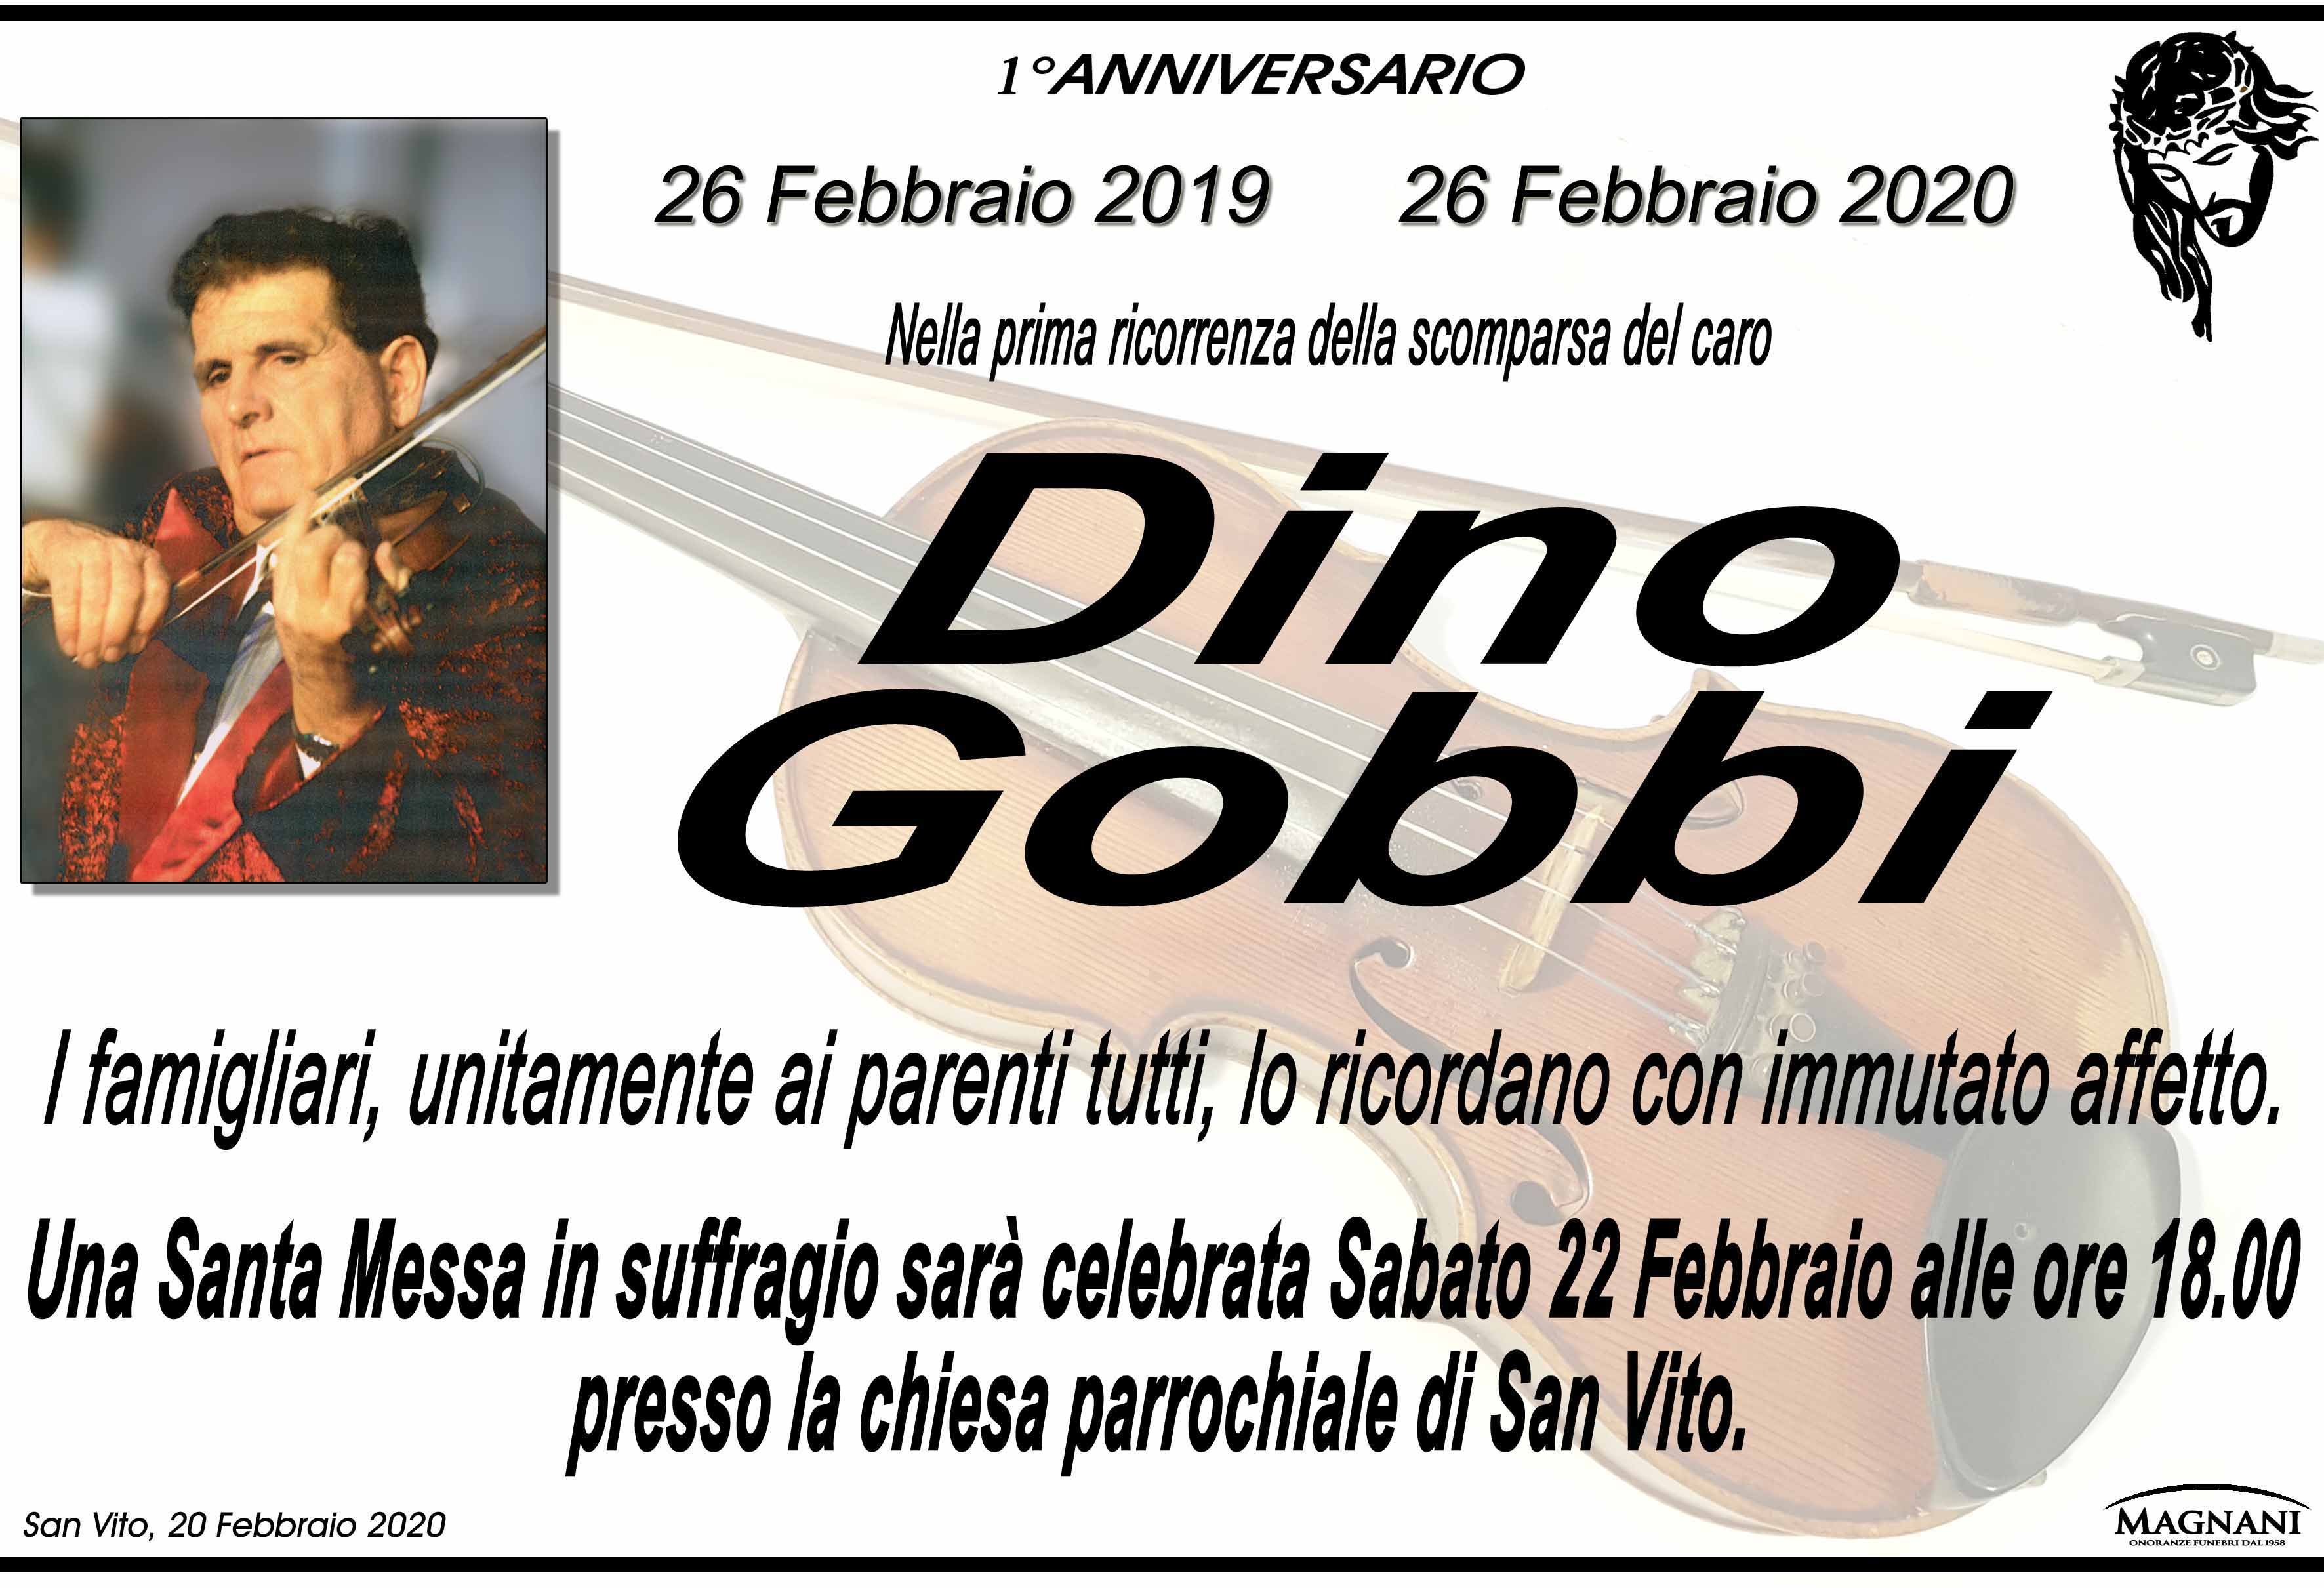 Dino Gobbi